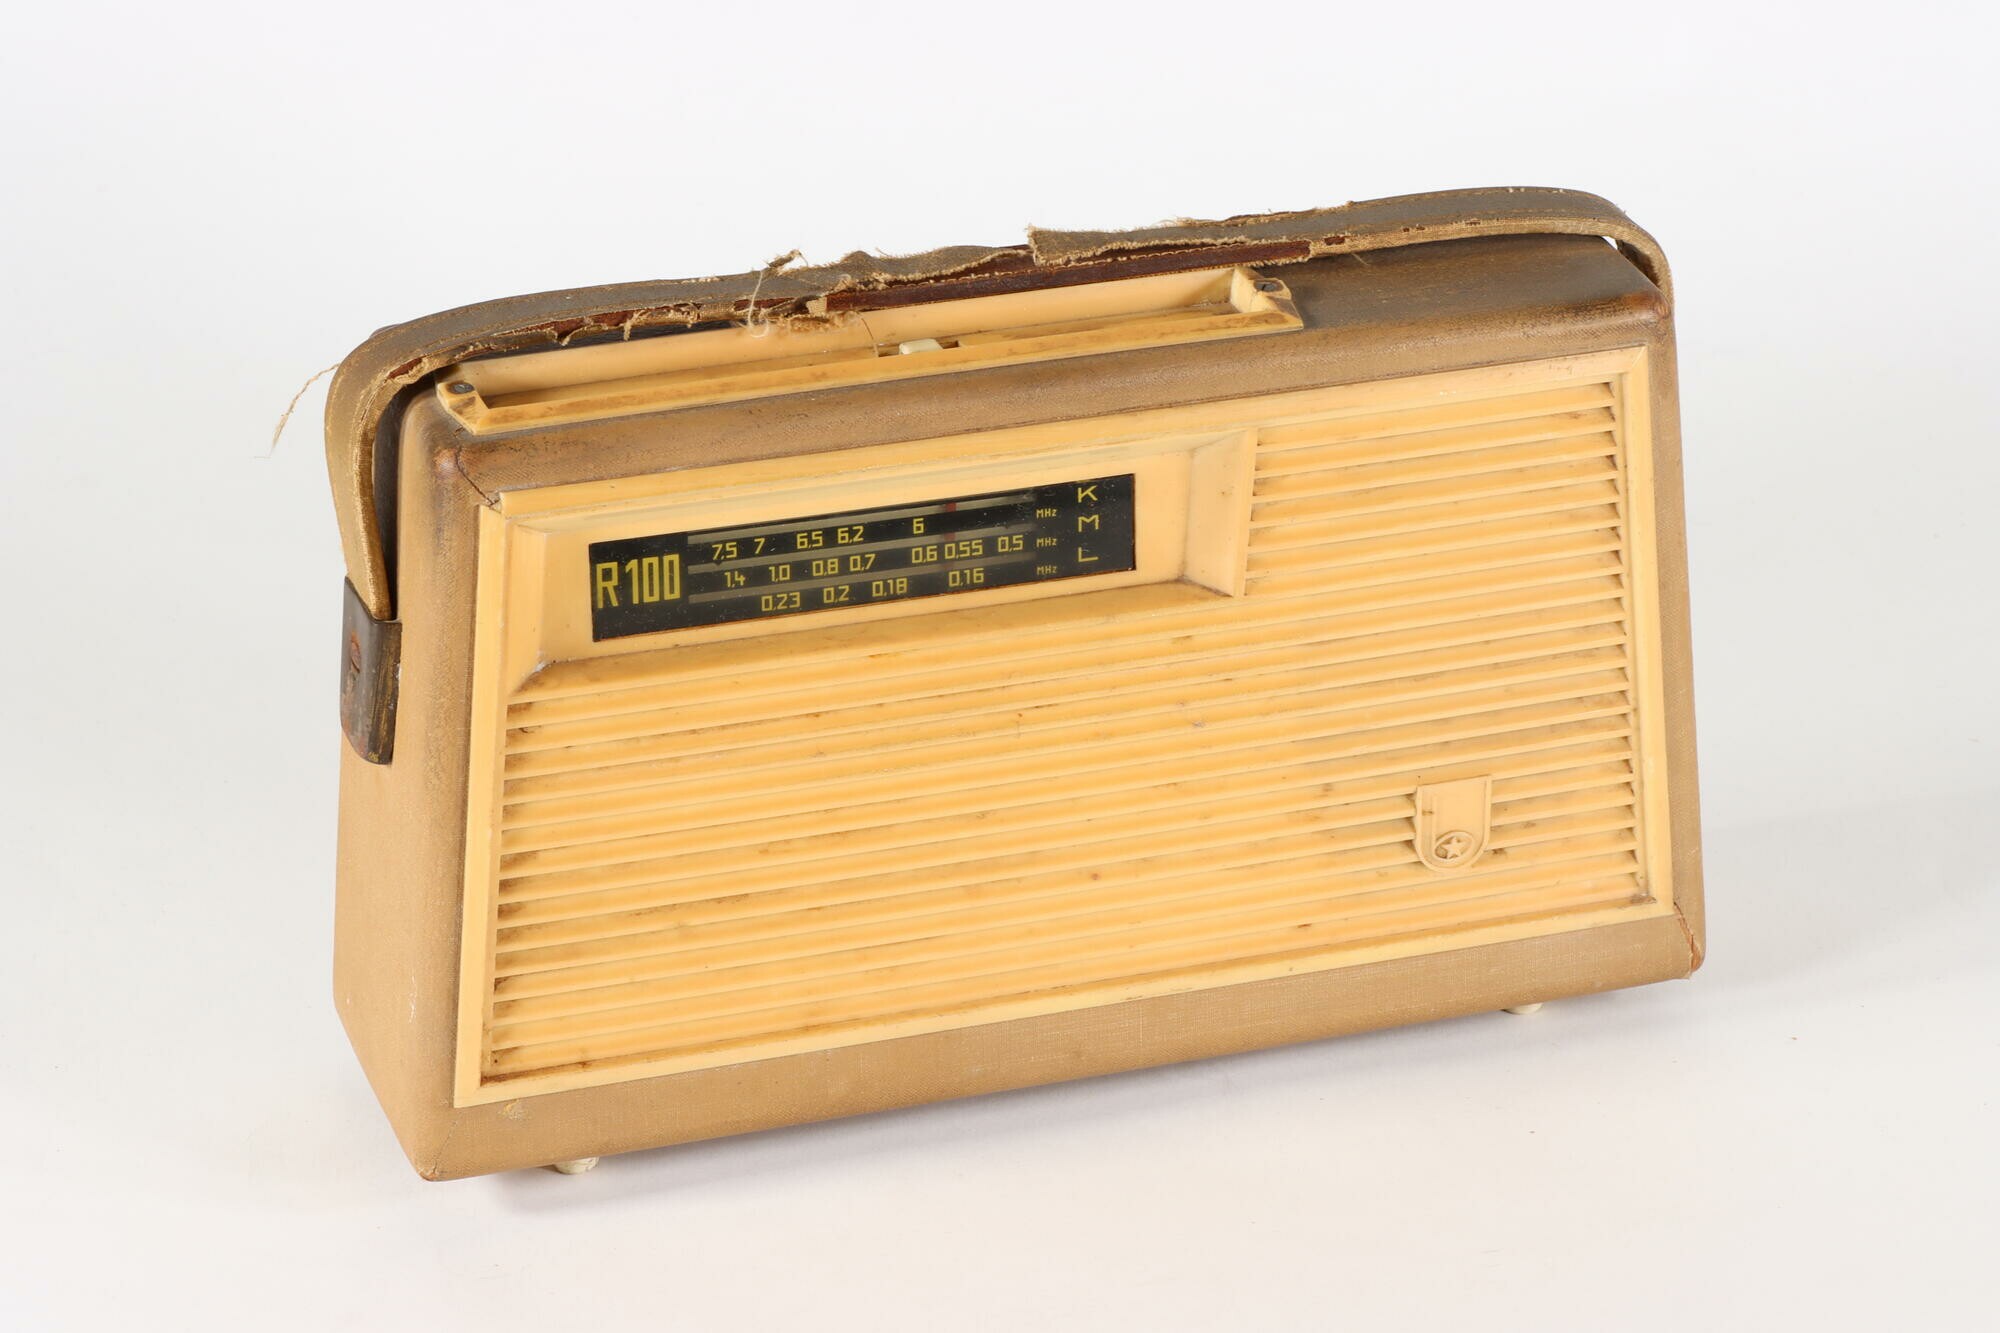 Kofferradio R 100, Vorderseite (Industriemuseum Chemnitz; Fotografin: Marion Kaiser CC BY-NC-SA)